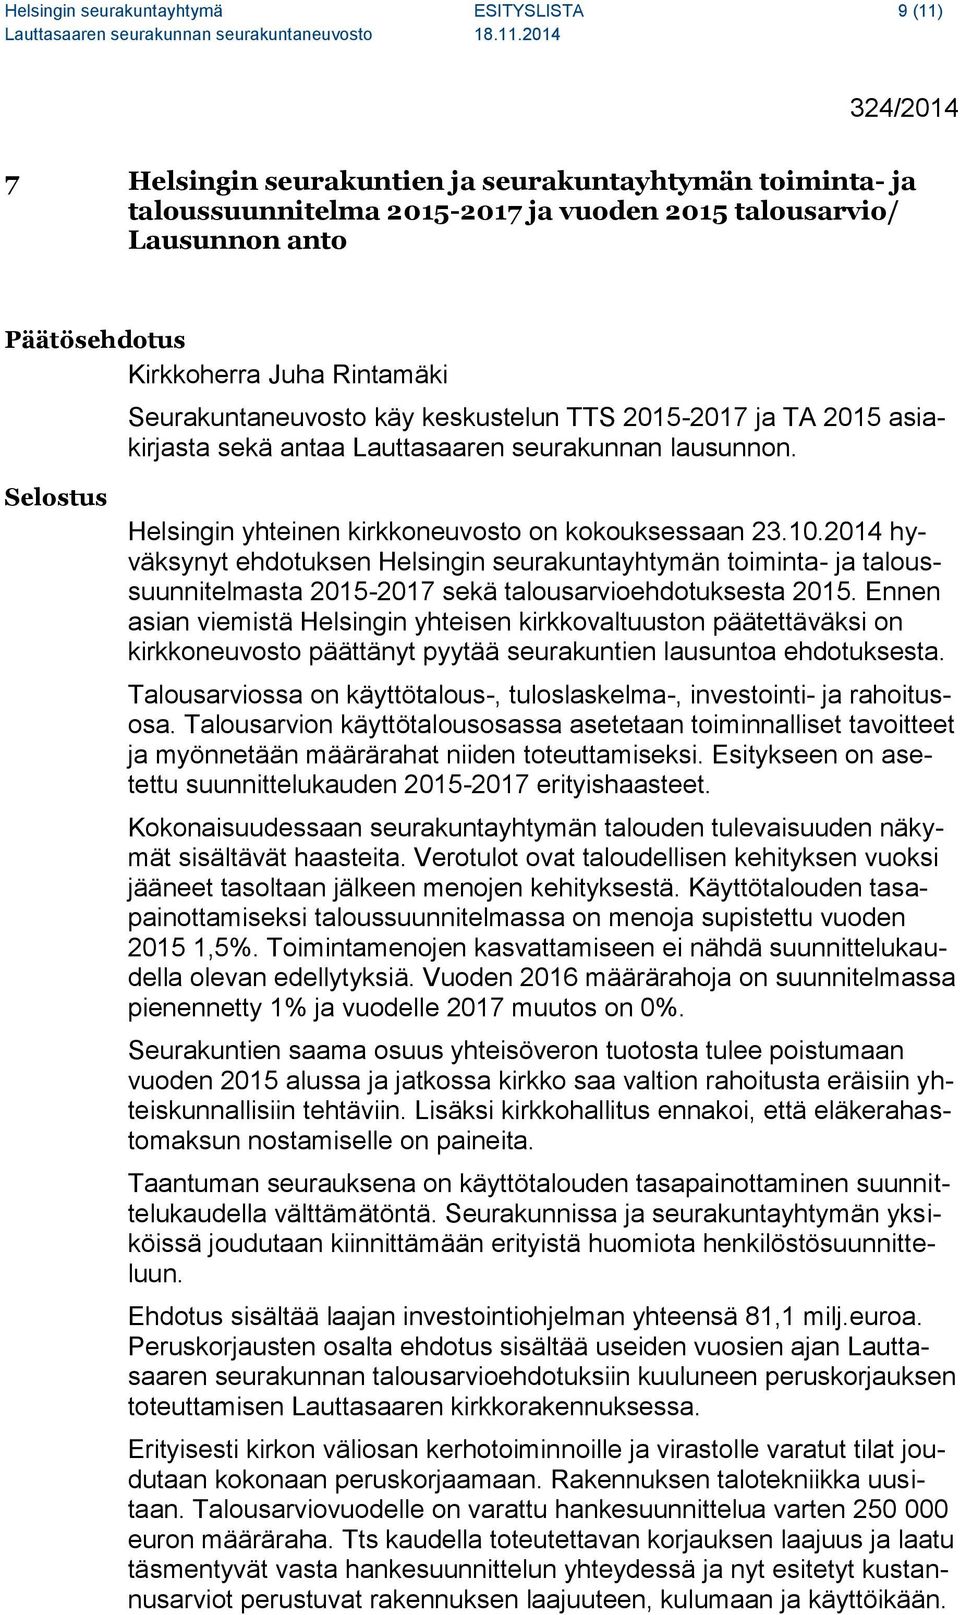 Selostus Helsingin yhteinen kirkkoneuvosto on kokouksessaan 23.10.2014 hyväksynyt ehdotuksen Helsingin seurakuntayhtymän toiminta- ja taloussuunnitelmasta 2015-2017 sekä talousarvioehdotuksesta 2015.